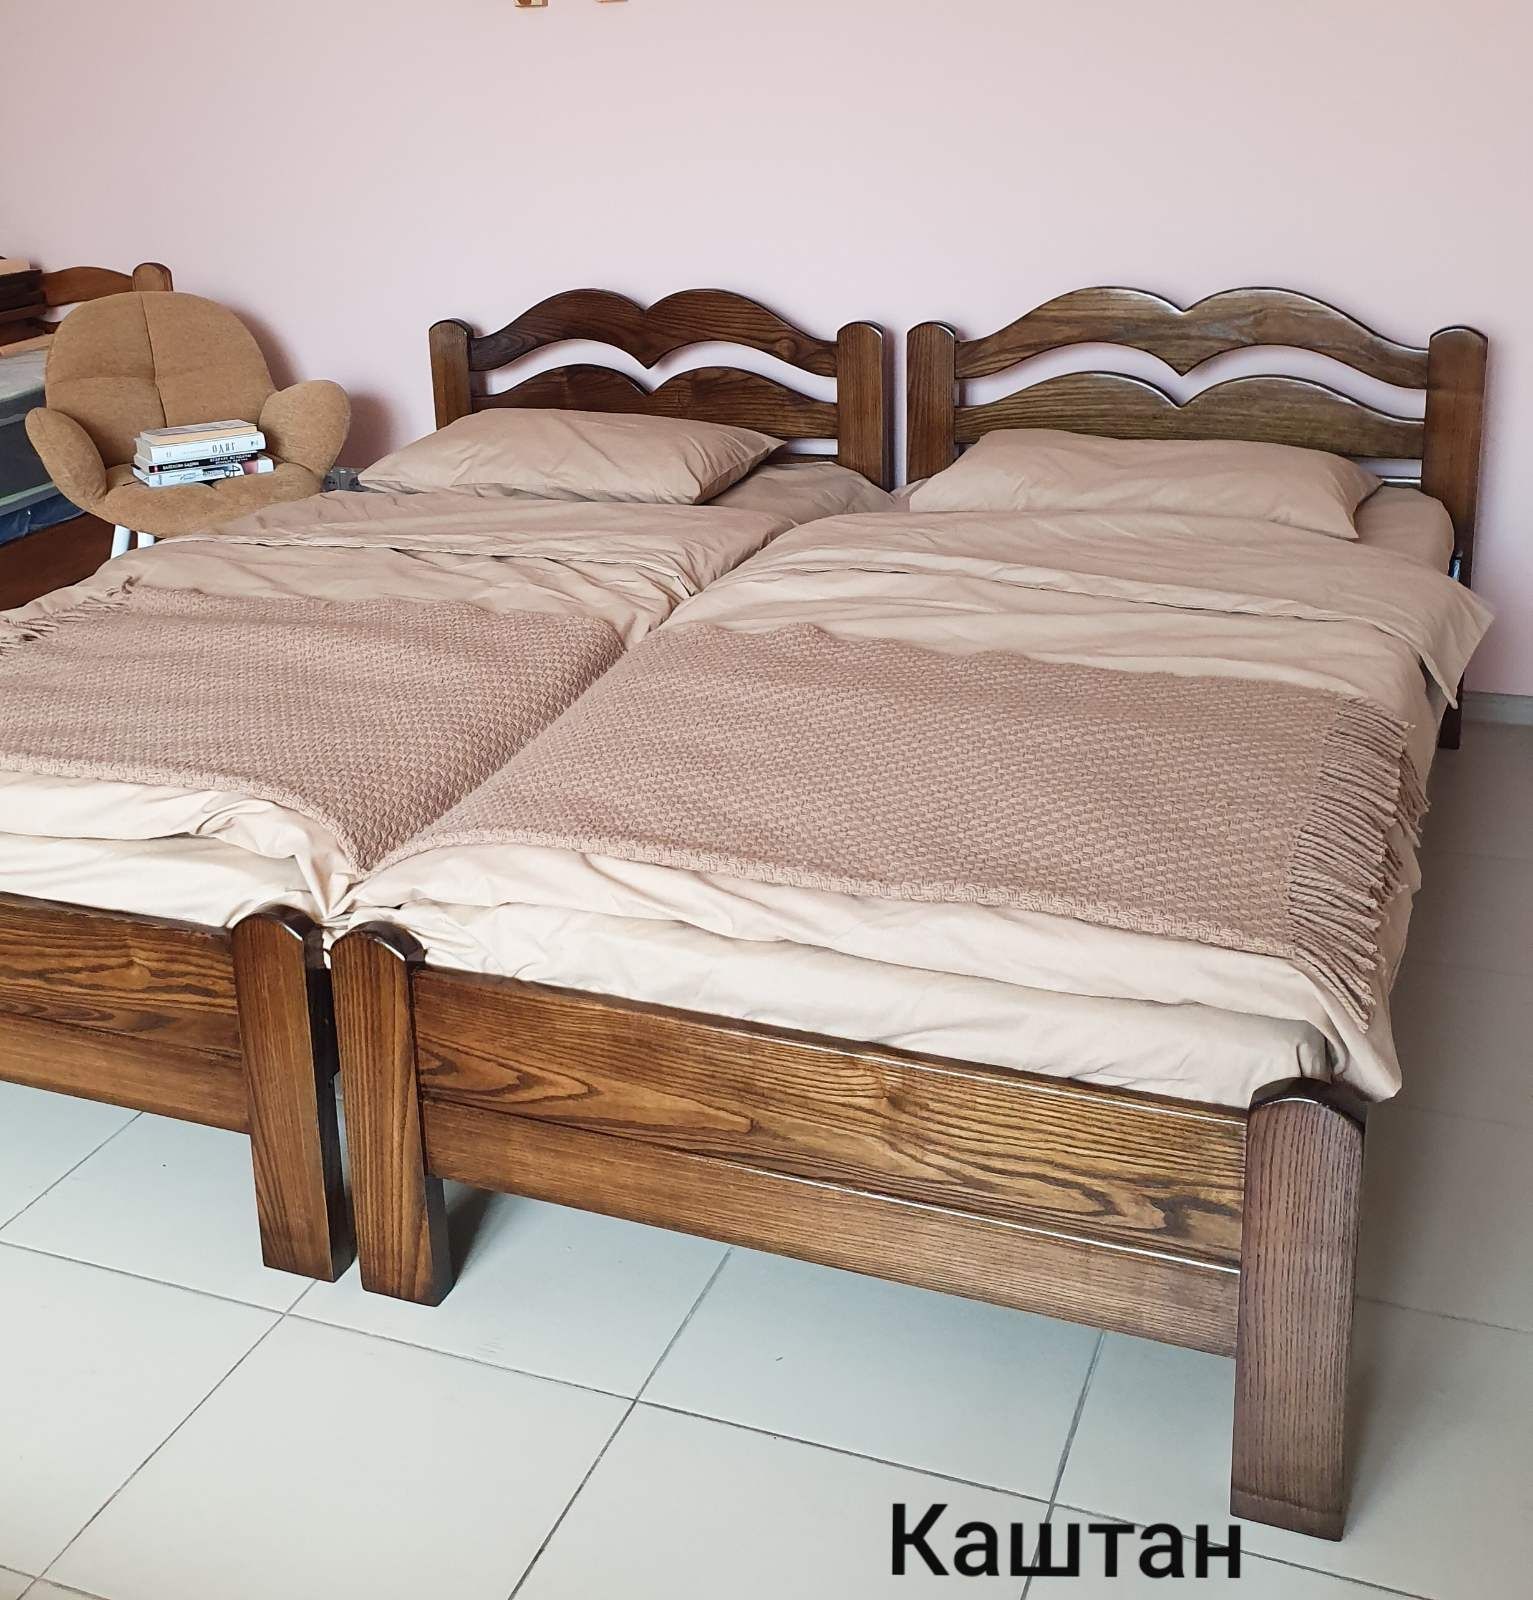 Ліжко односпальне,дерев'яне,ясен цільний,доросле,дитяче.90/190;90/200,